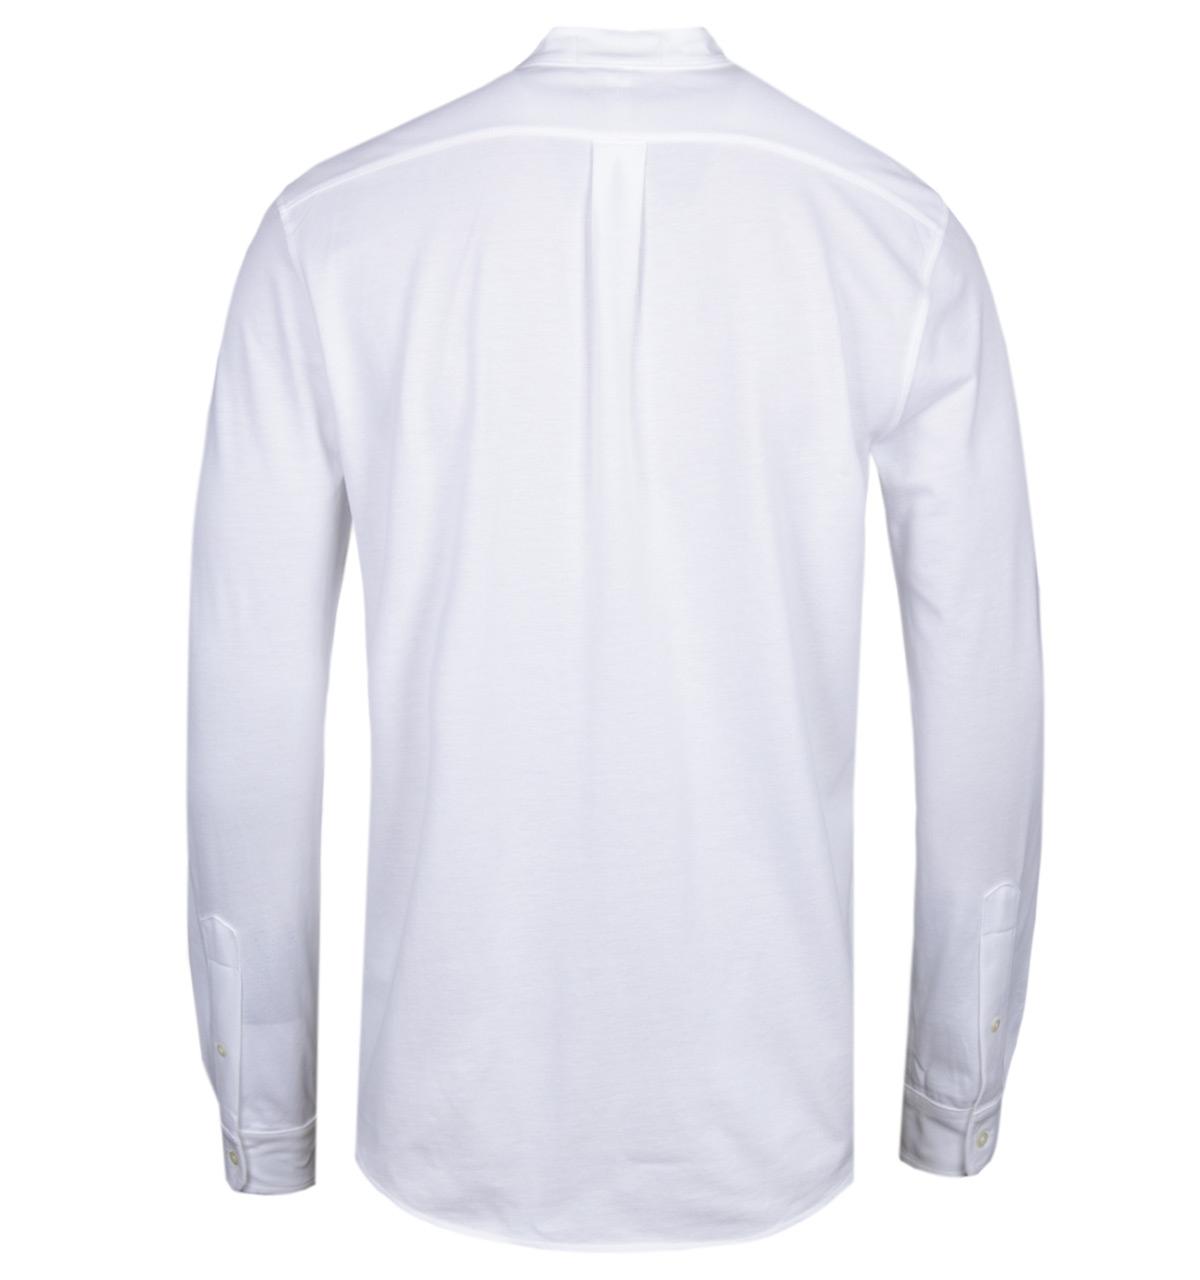 Polo Ralph Lauren Mandarin Collar White Mesh Shirt in White for Men - Lyst